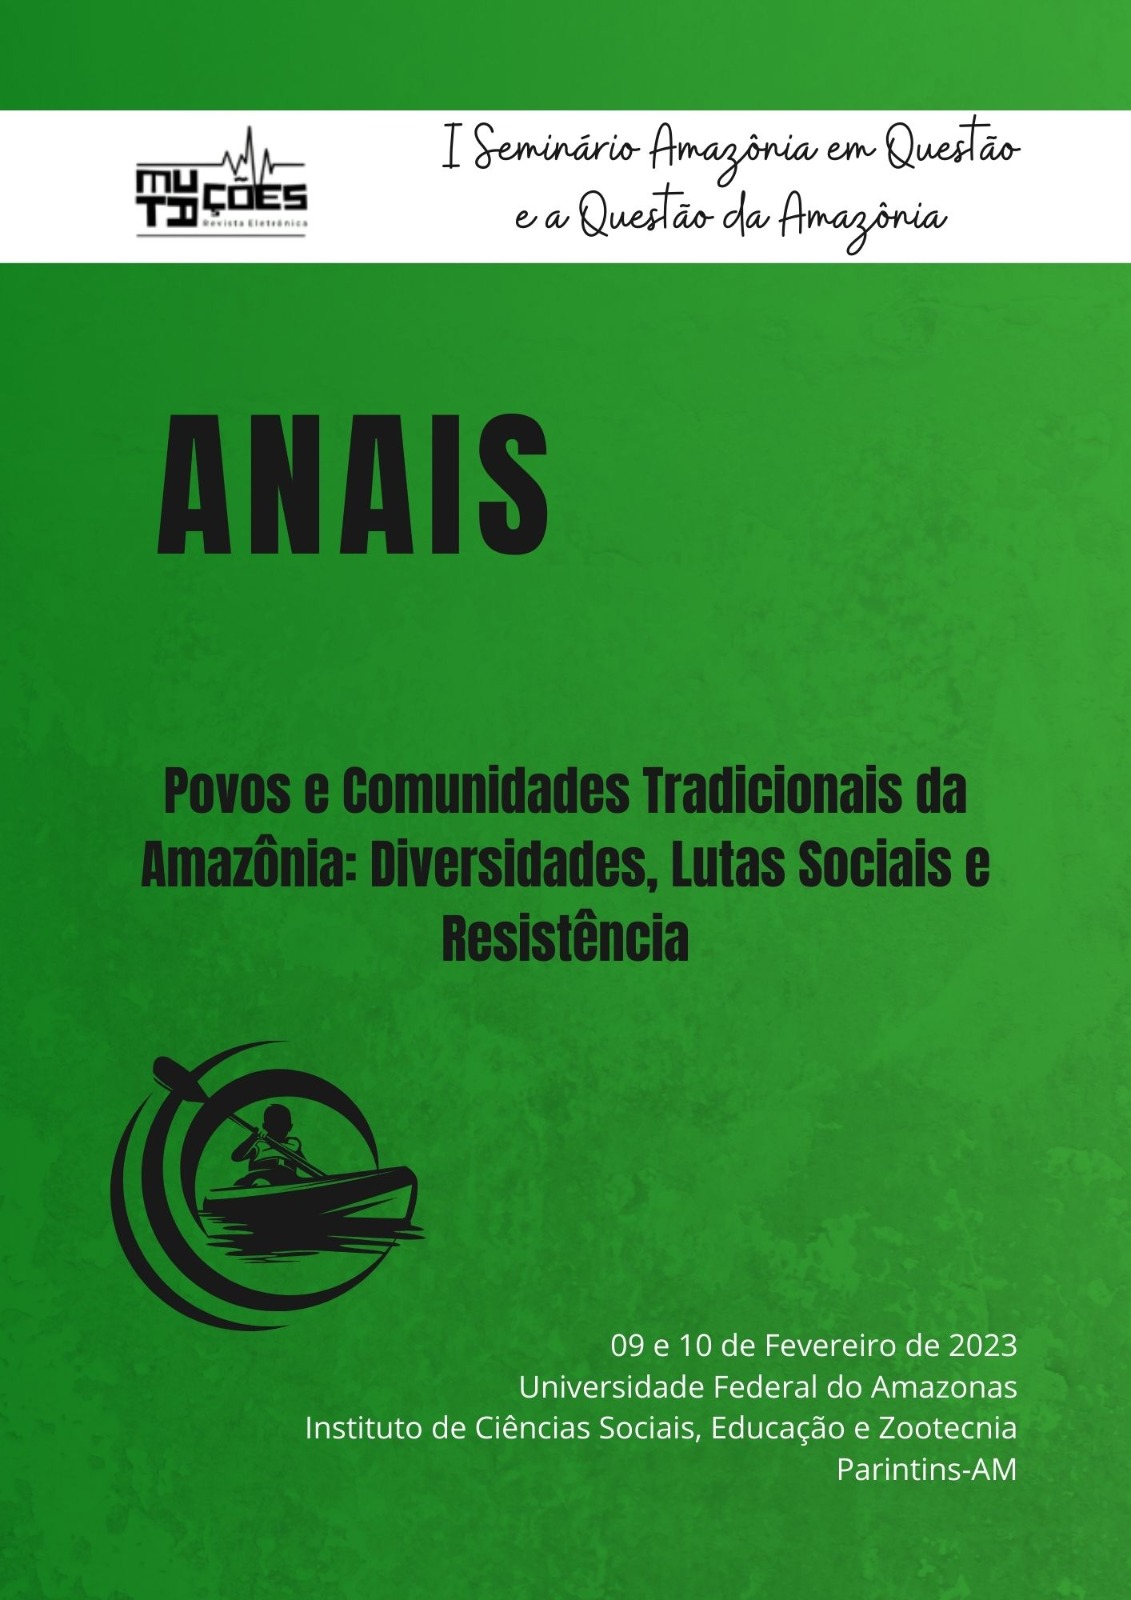 					Ver Vol. 16 Núm. 26, Sup. 2 (2023): Anais do I Seminário “Amazônia em Questão e a Questão da Amazônia”: “Povos e Comunidades Tradicionais da Amazônia: Diversidades, Lutas Sociais e Resistência”
				